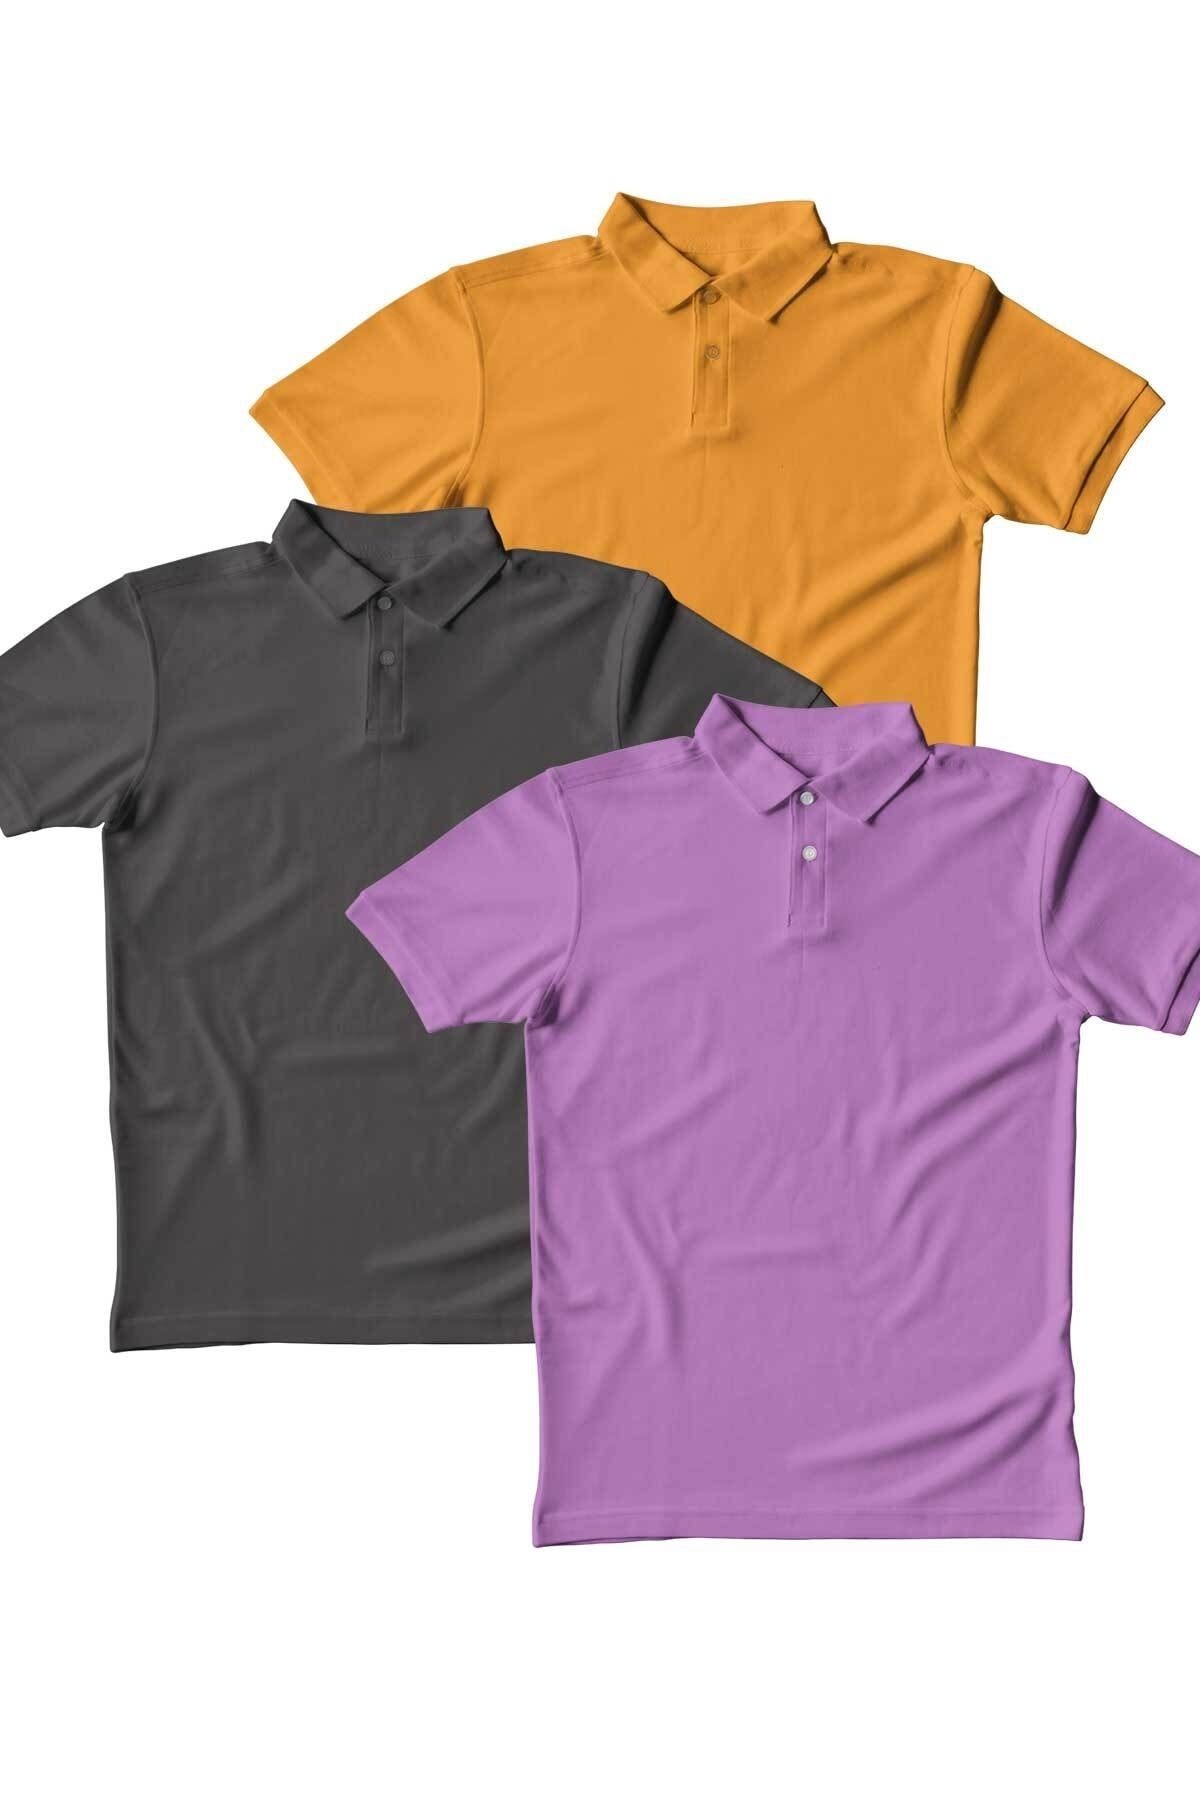 Burlu Polo Yaka T-shirt 3 lü Set